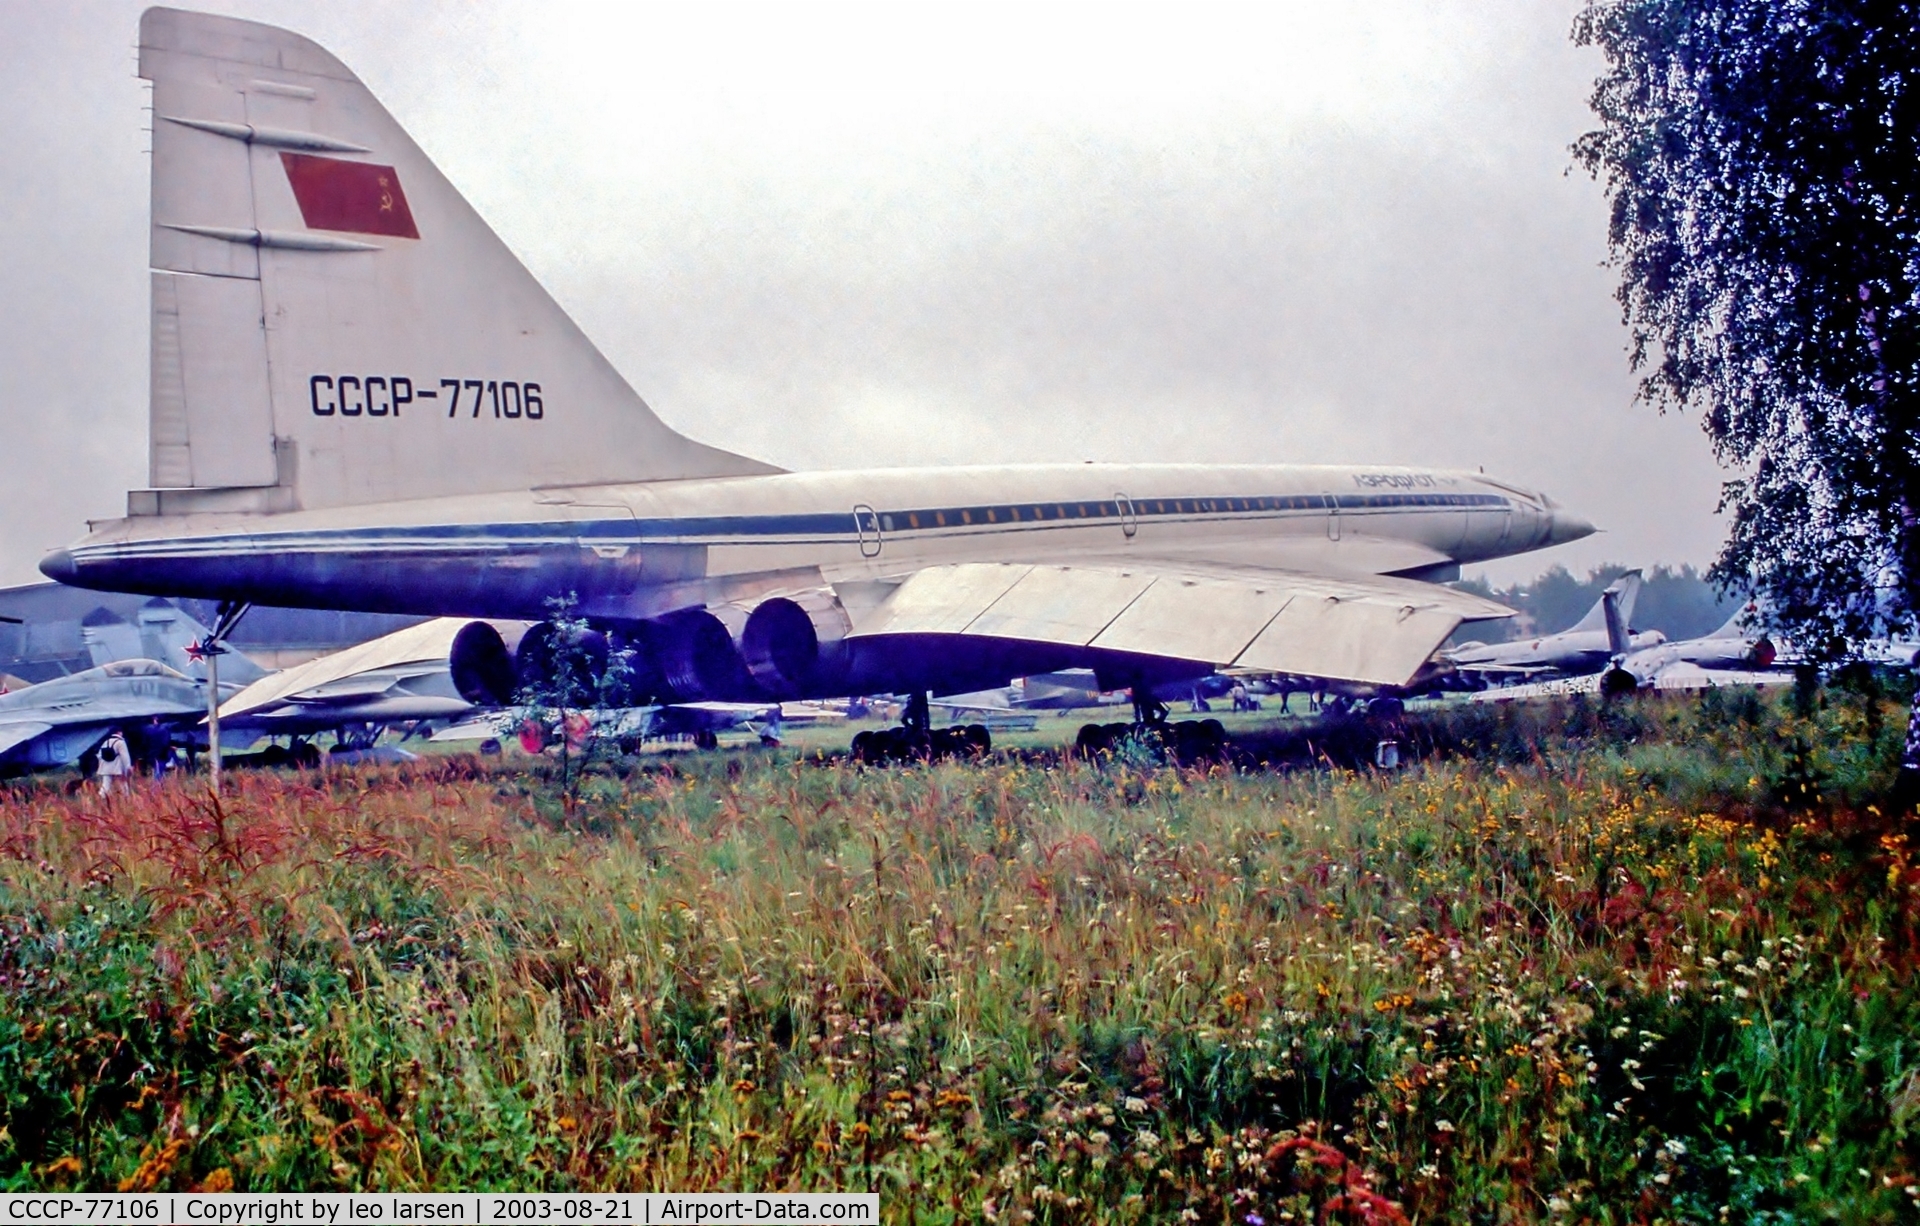 CCCP-77106, 1974 Tupolev Tu-144 C/N 04-1, Monino Museum Moscow 21.8.03